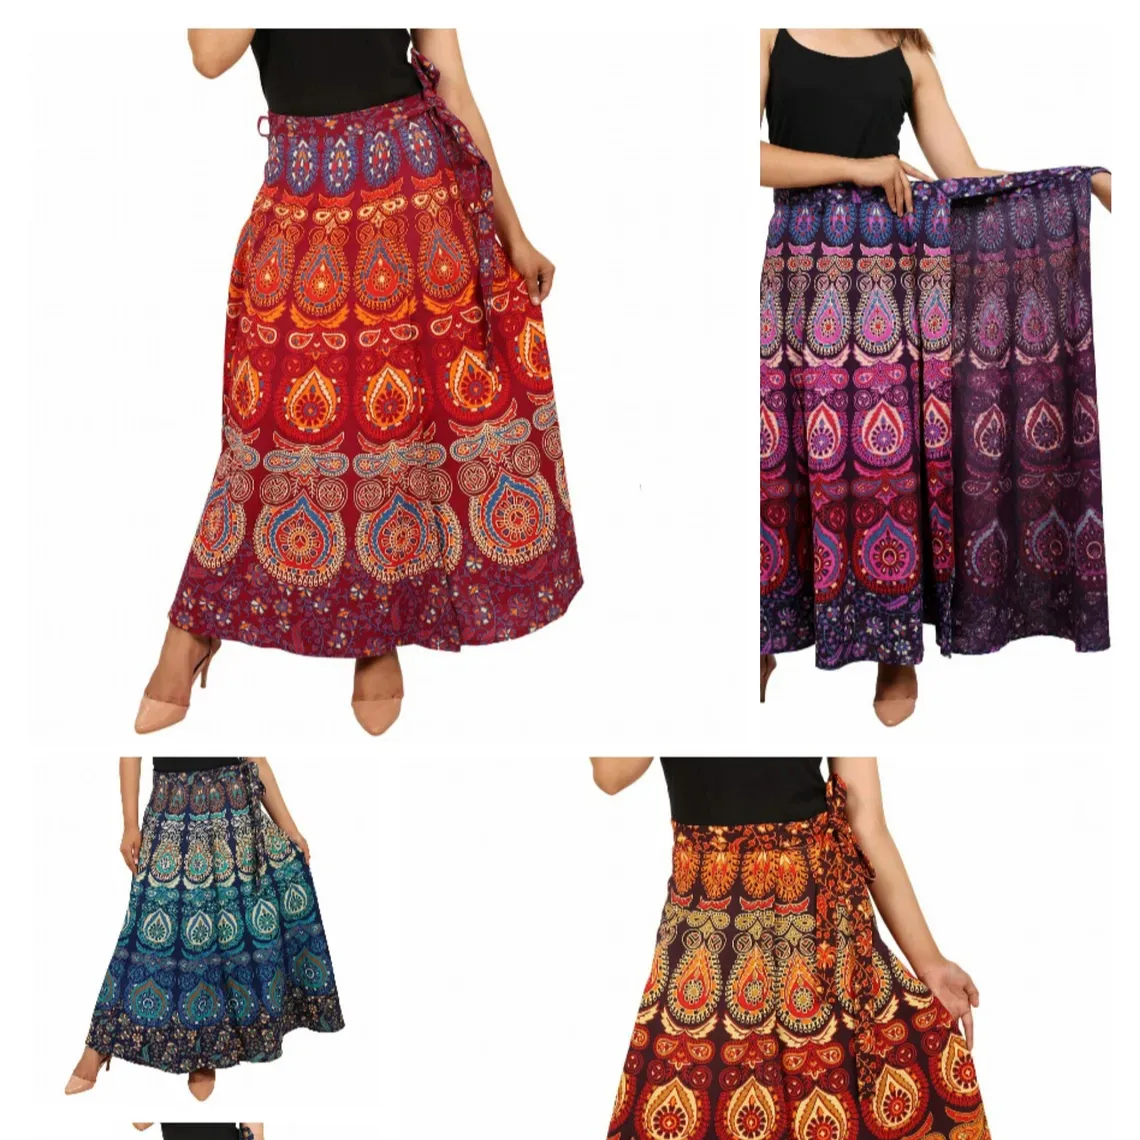 Falda envolvente de algodón multicolor Hippie, falda larga gitana para mujer, falda India para danza del vientre